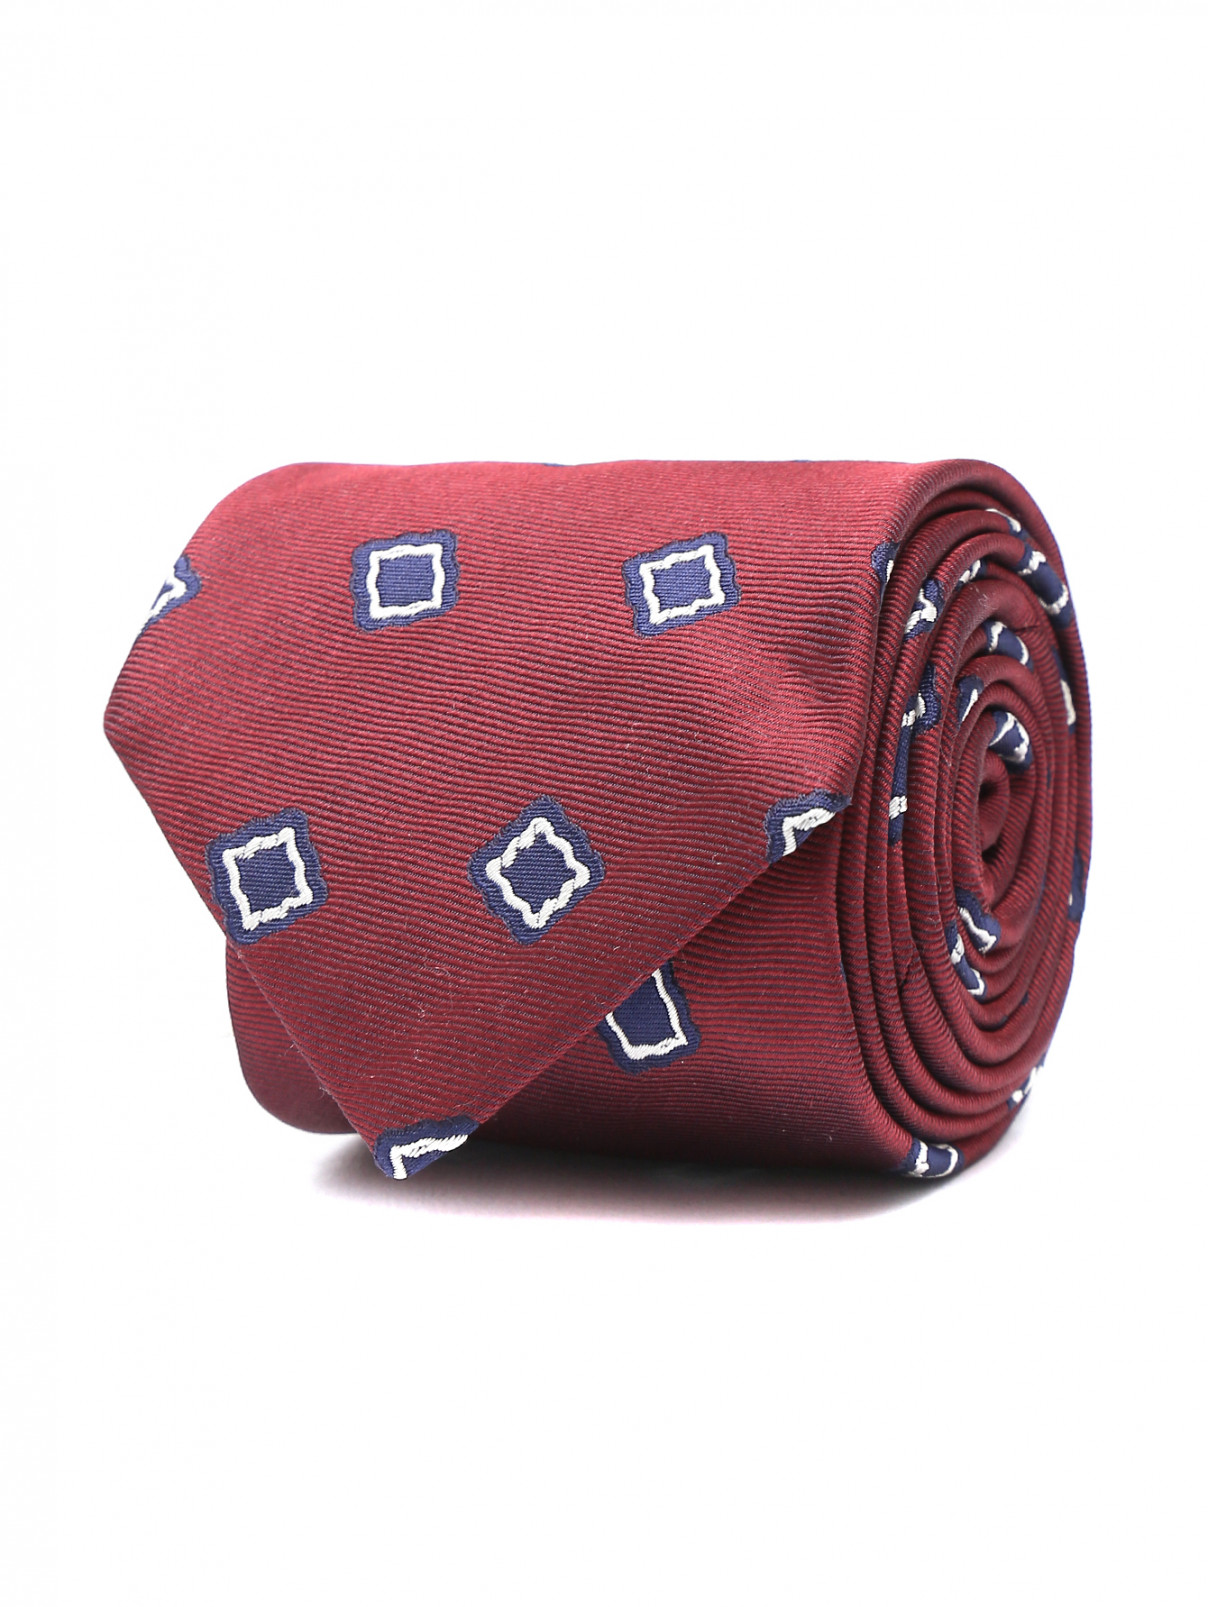 Галстук из шелка с узором ROSI Collection  –  Общий вид  – Цвет:  Красный